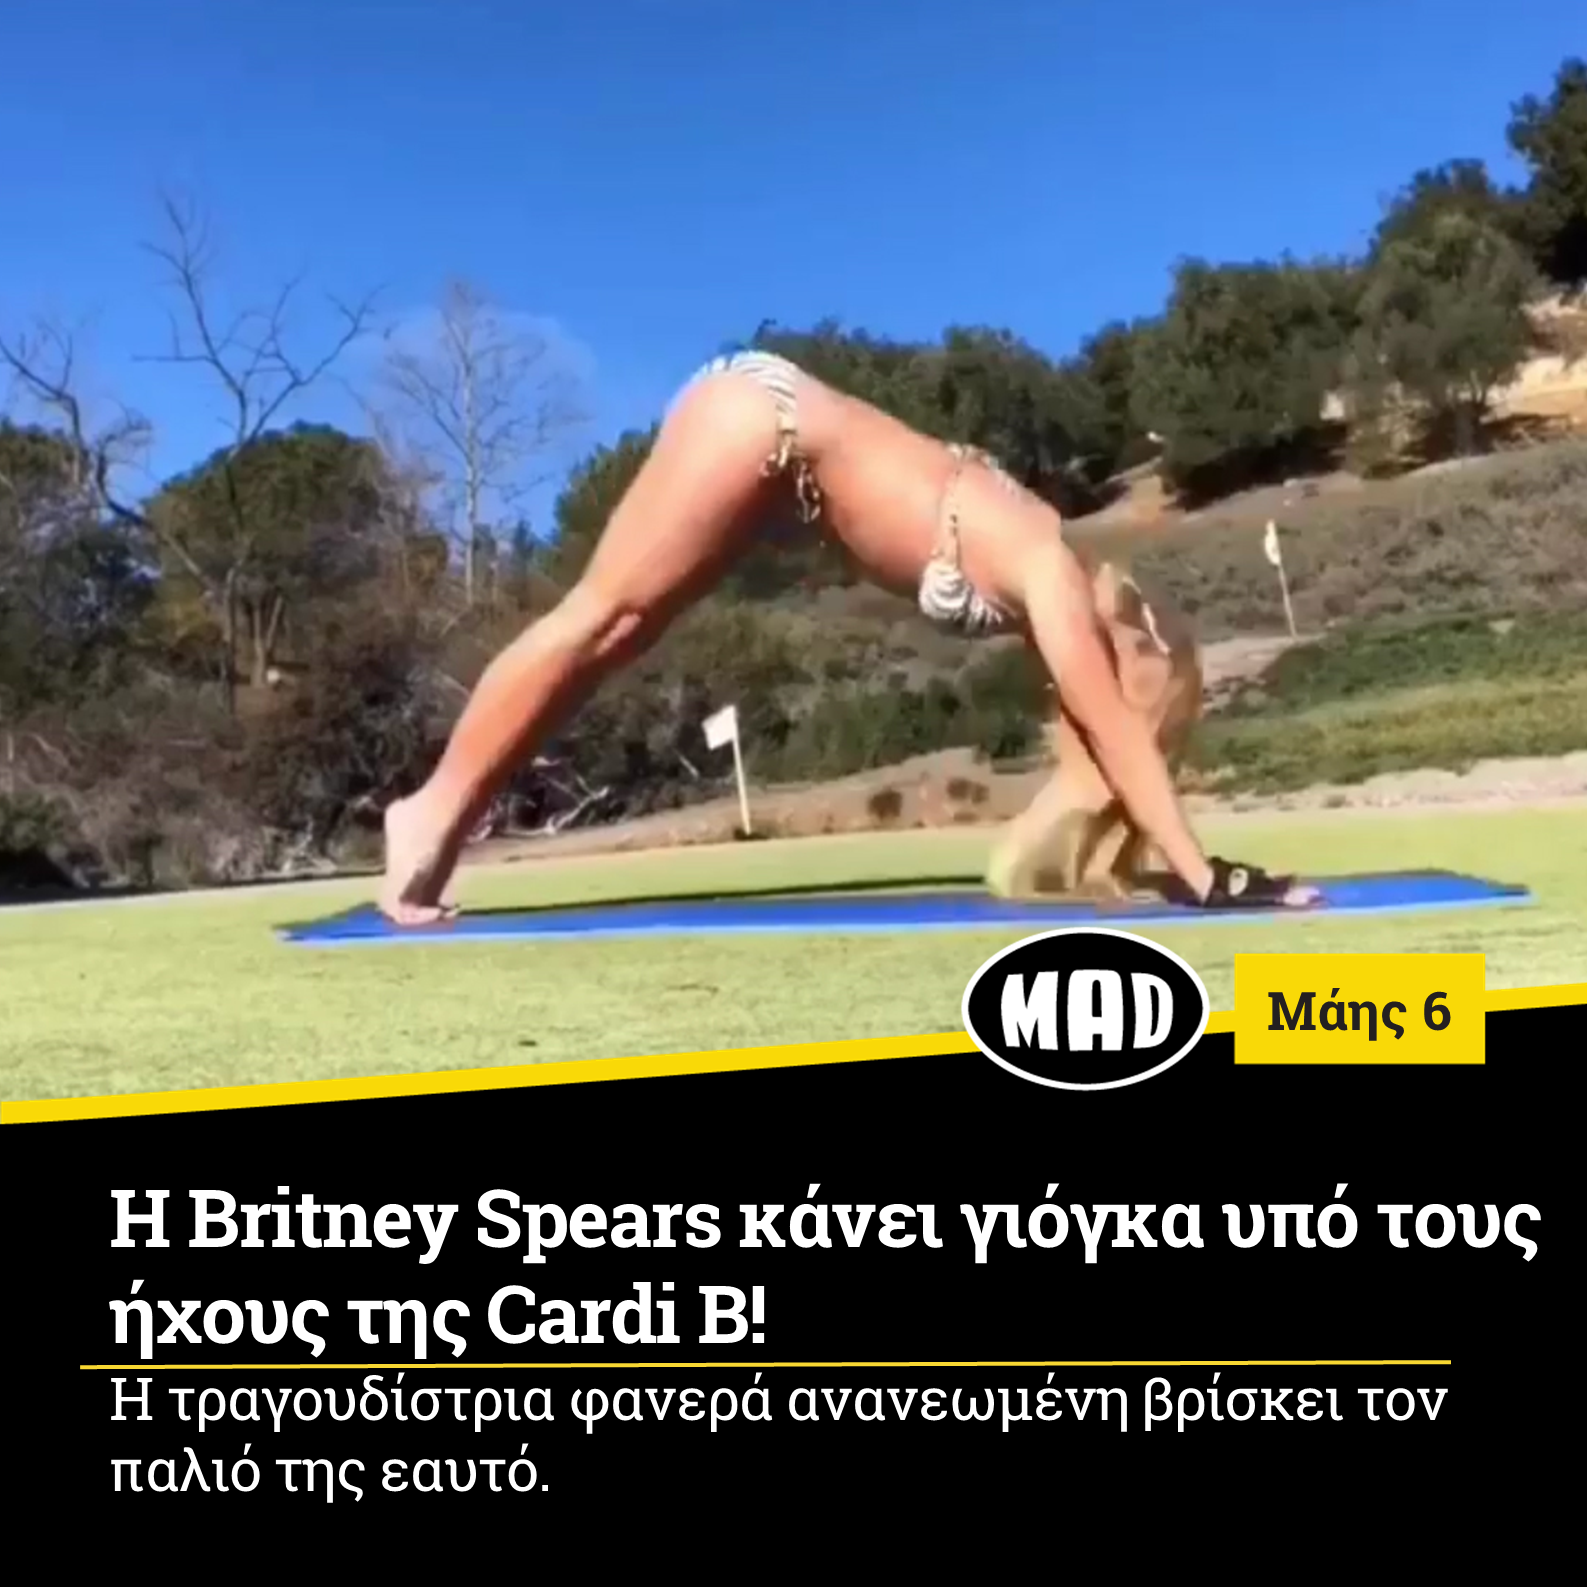 H Britney Spears κάνει γιόγκα υπό τους ήχους της Cardi B!